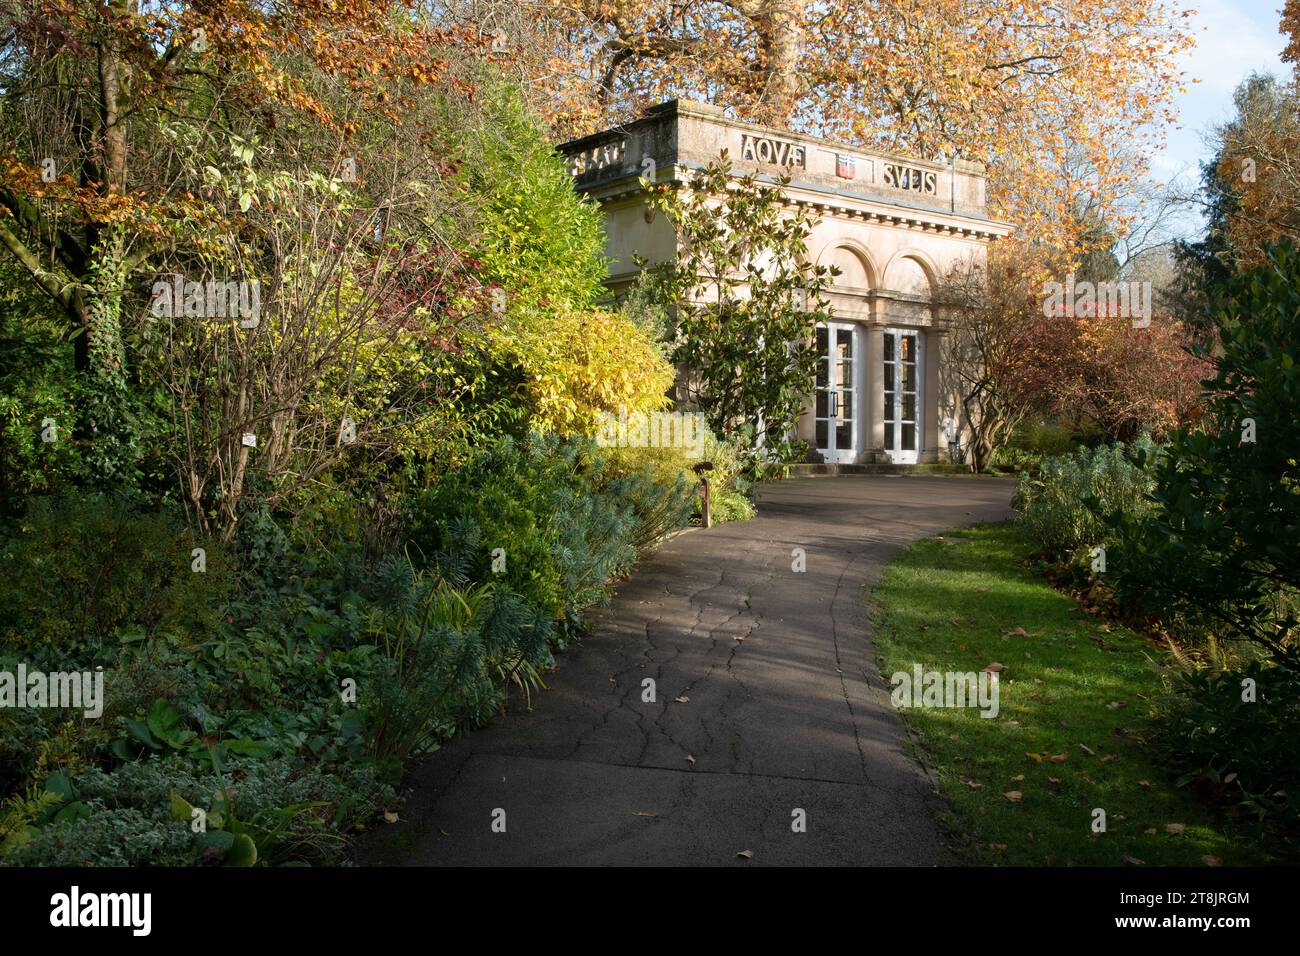 Les jardins botaniques, Royal Victoria Park, Bath, Angleterre Banque D'Images